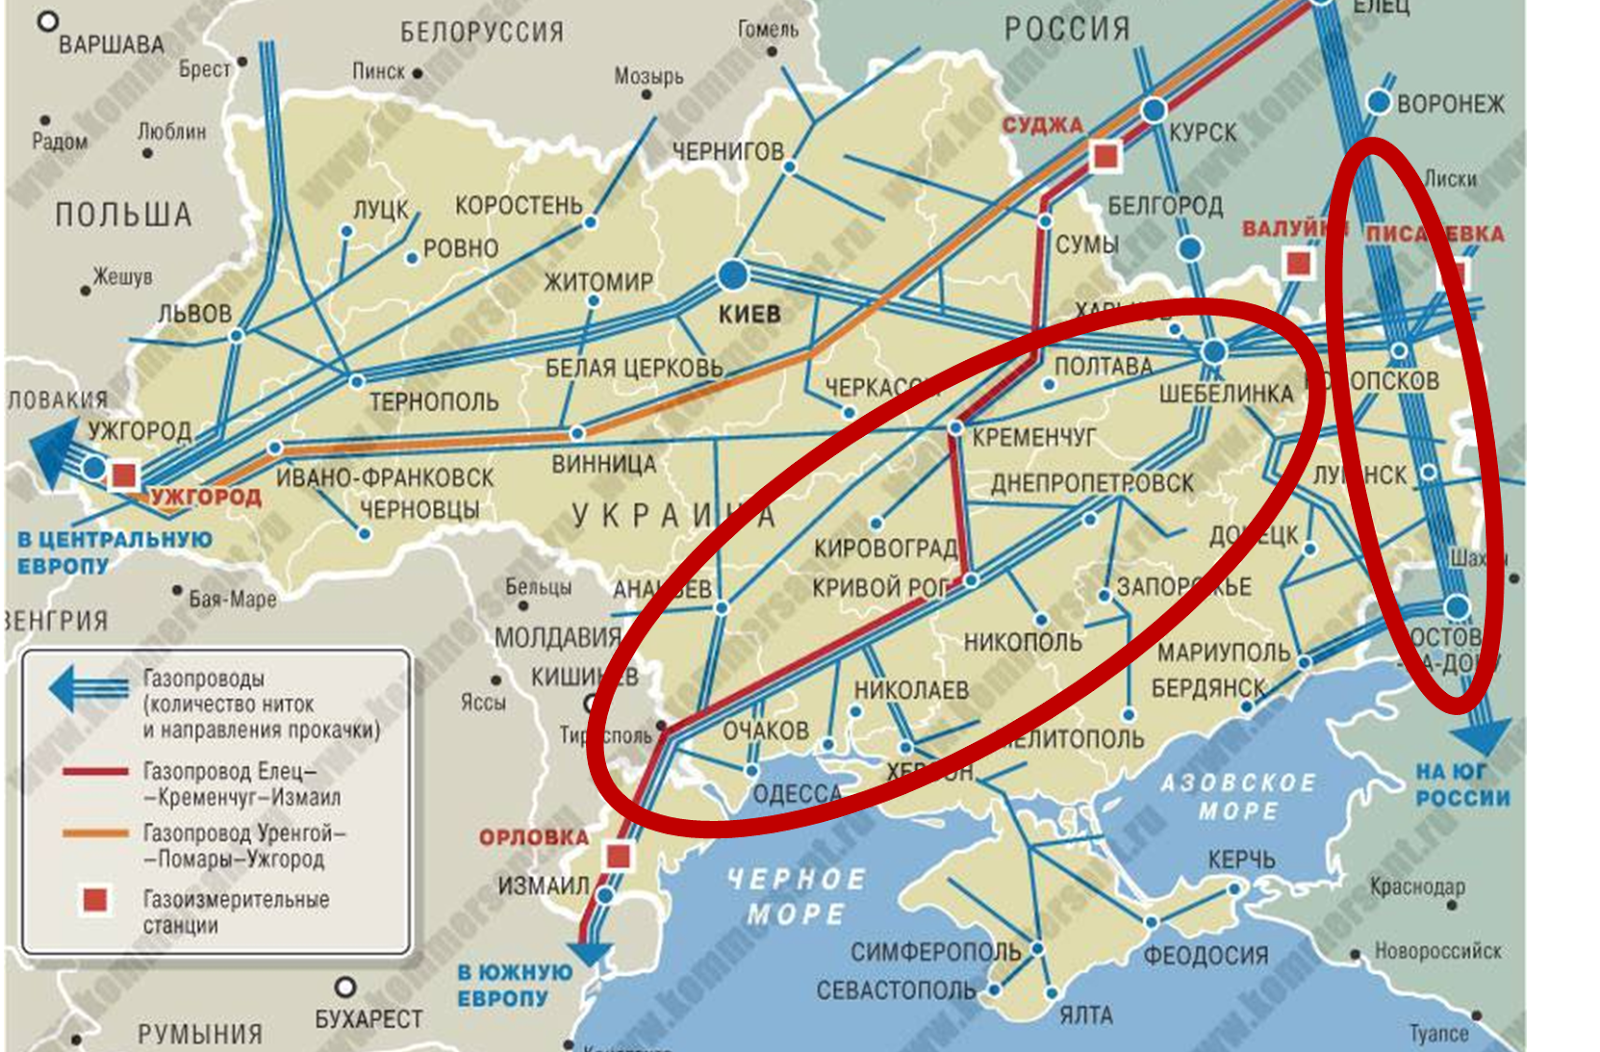 Карта газопровода на украине в европу. Схема газового трубопровода через Украину. Газовая труба на Украине на карте. Помары Ужгород газопровод карта. Газопровод Уренгой-Помары-Ужгород на карте Европы.